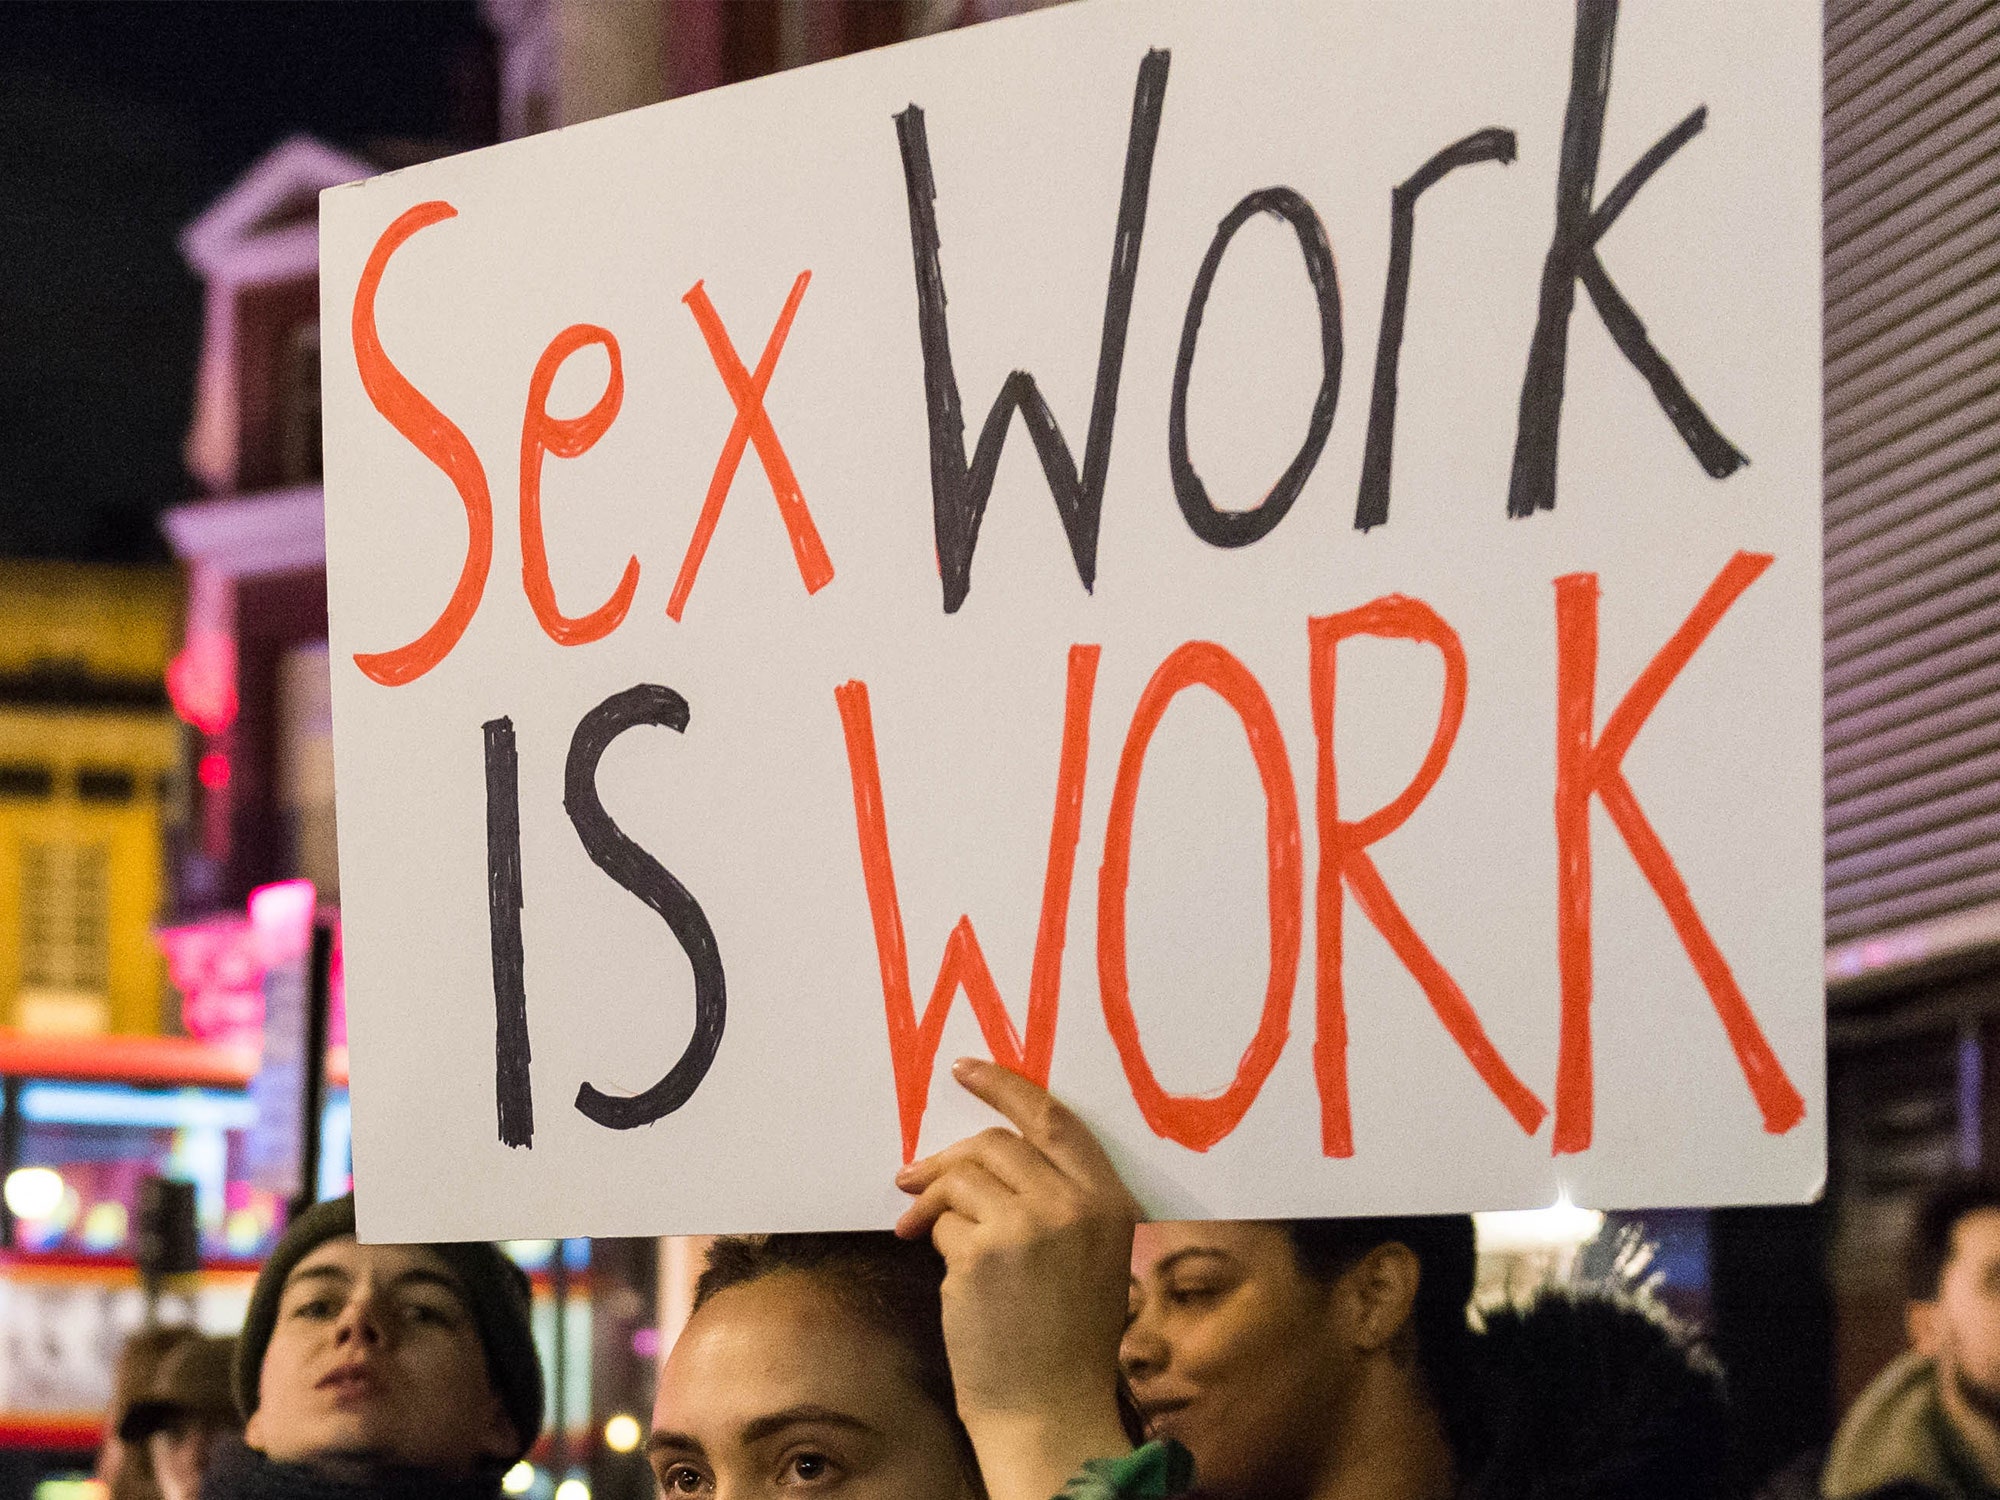 Sex work is work